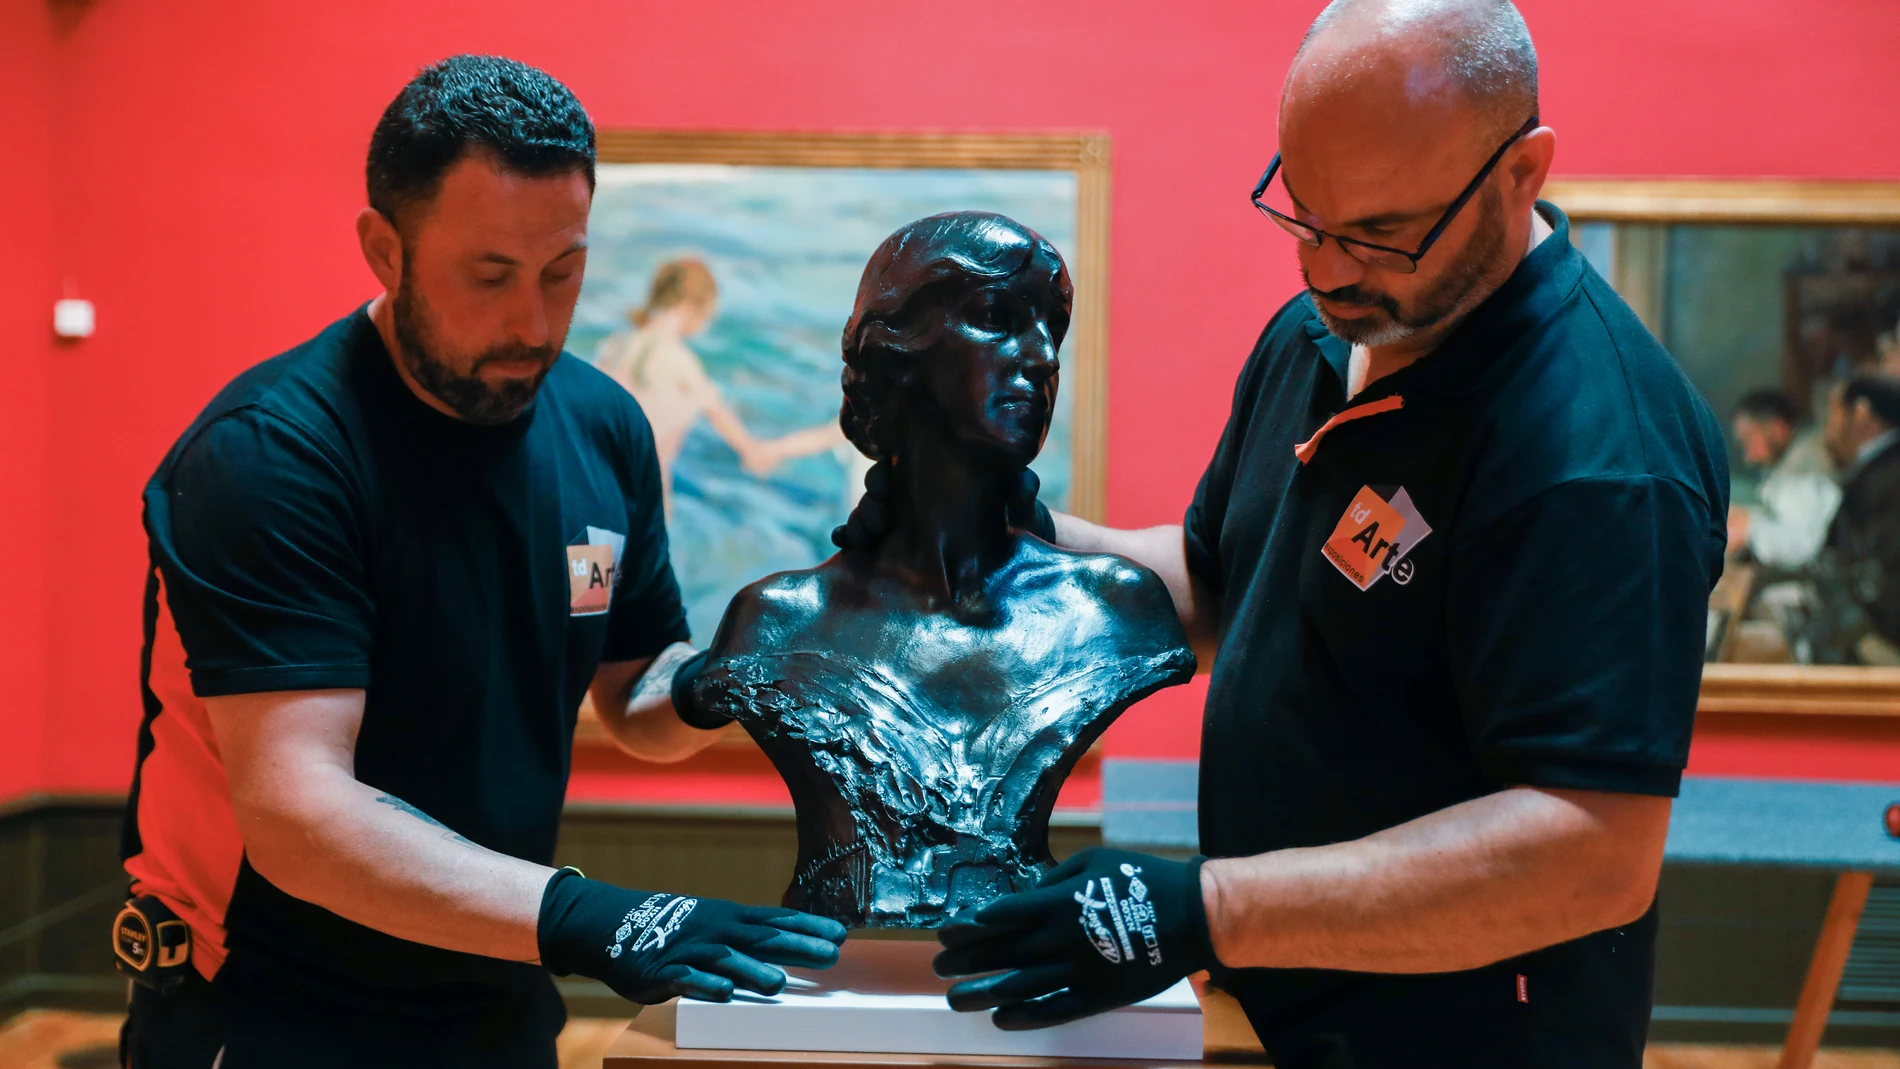 Operarios colocan una de las obras que forman parte de la muestra ‘Sorolla y Benlliure. Una amistad, dos artistas’ expuesta en el Museo Sorolla de Madrid desde el 20 de junio al 2 de octubre.